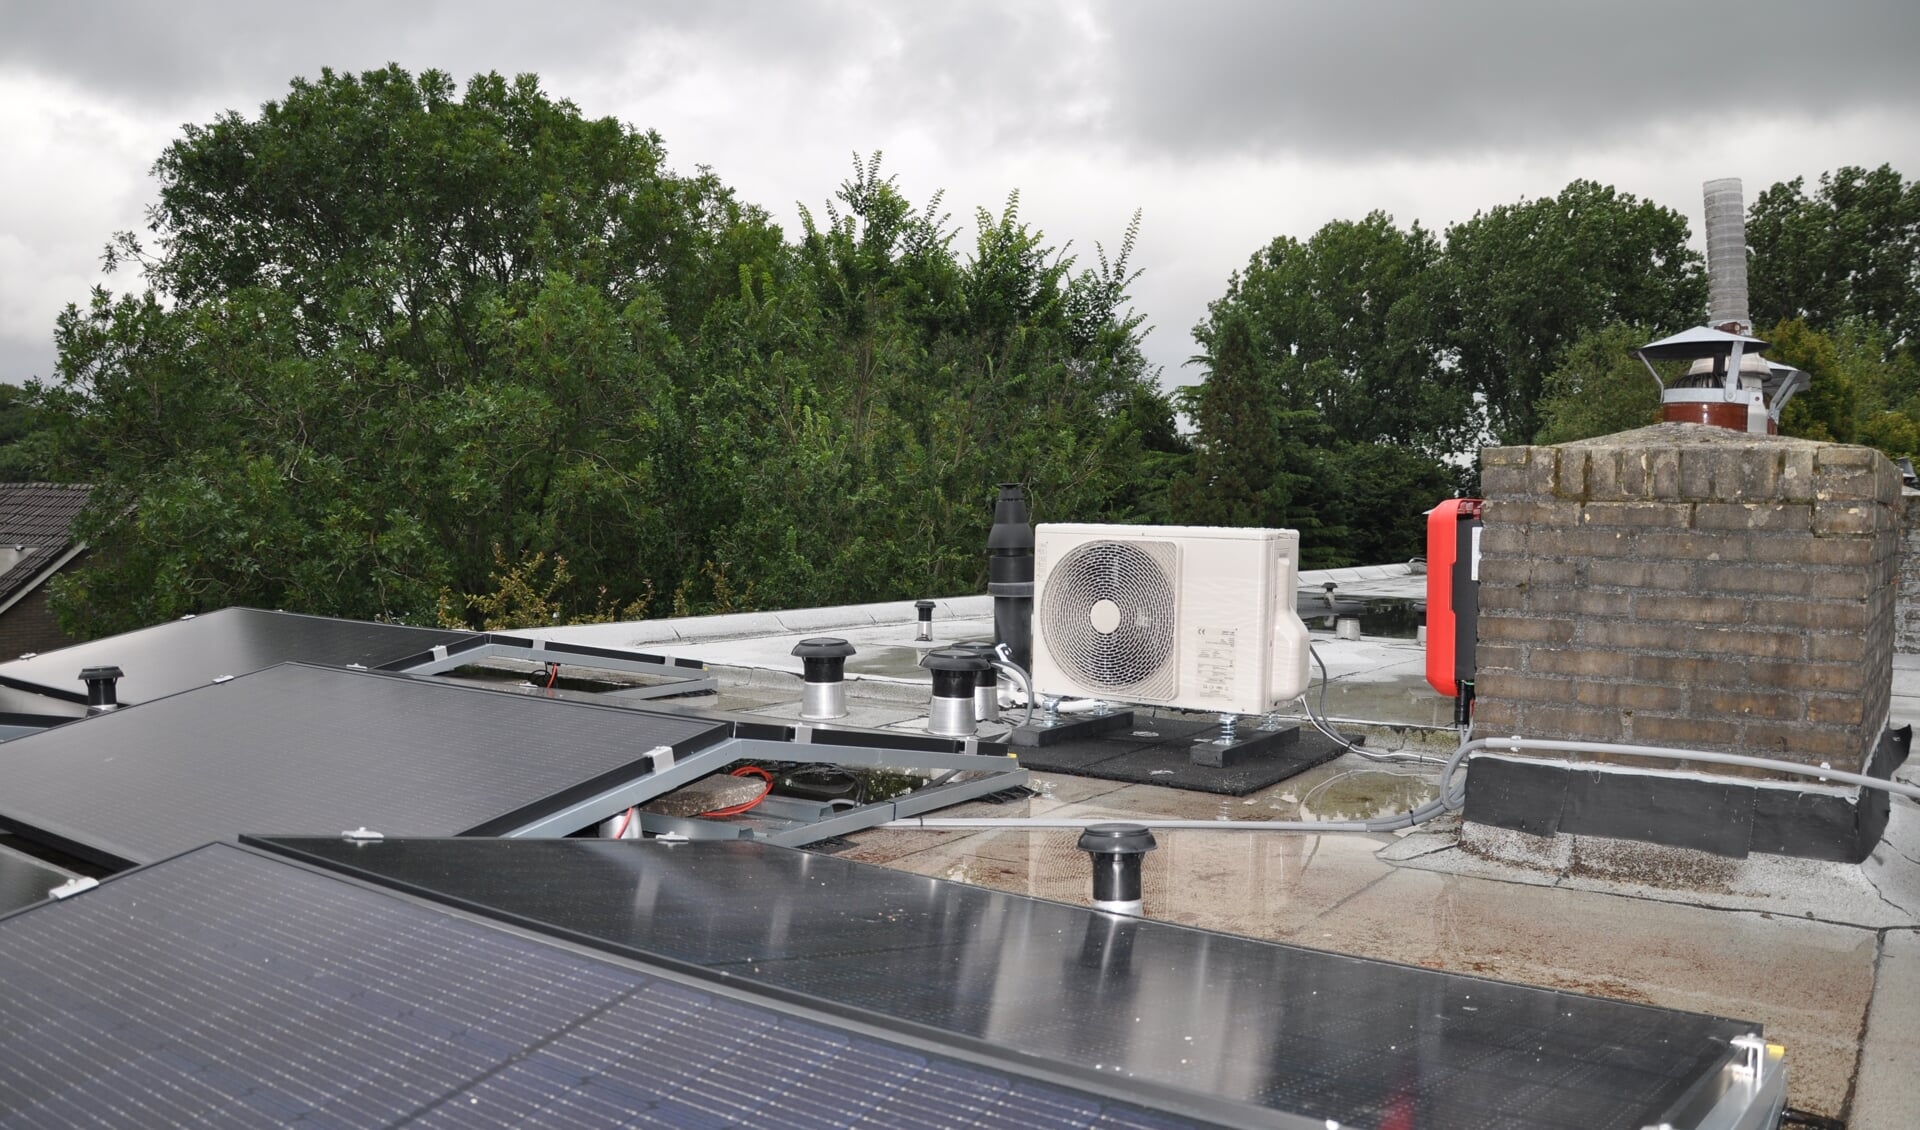 Buitenunit van hybride warmtepomp op een plat dak, waarop in dit voorbeeld ook zonnepanelen liggen.